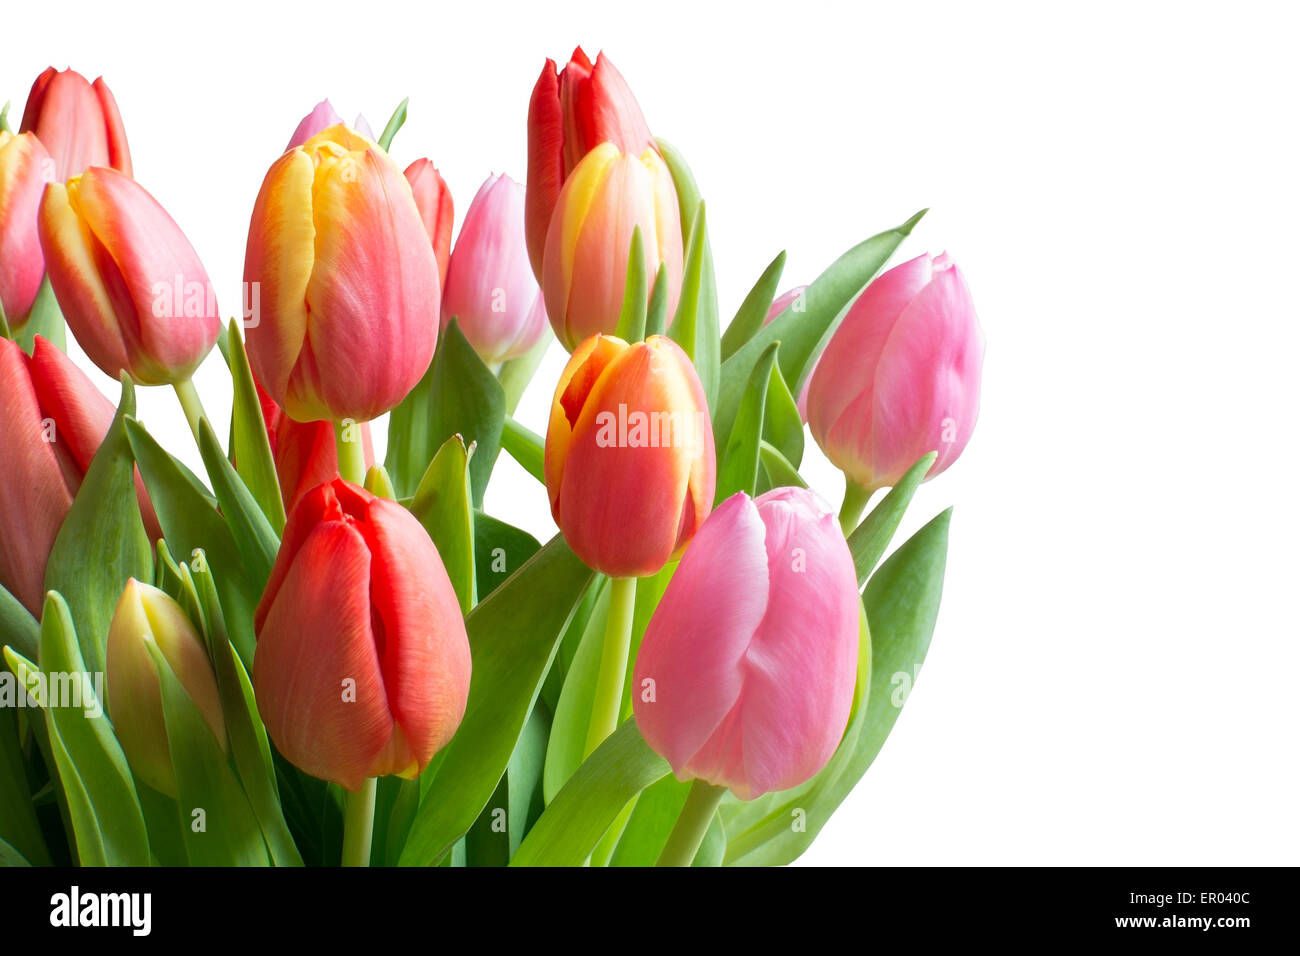 Tulipani colorati isolato su bianco. Bouquet di tulipani in rosso, giallo e rosa con steli e foglie in verde, 5isolato su bianco, ho Foto Stock